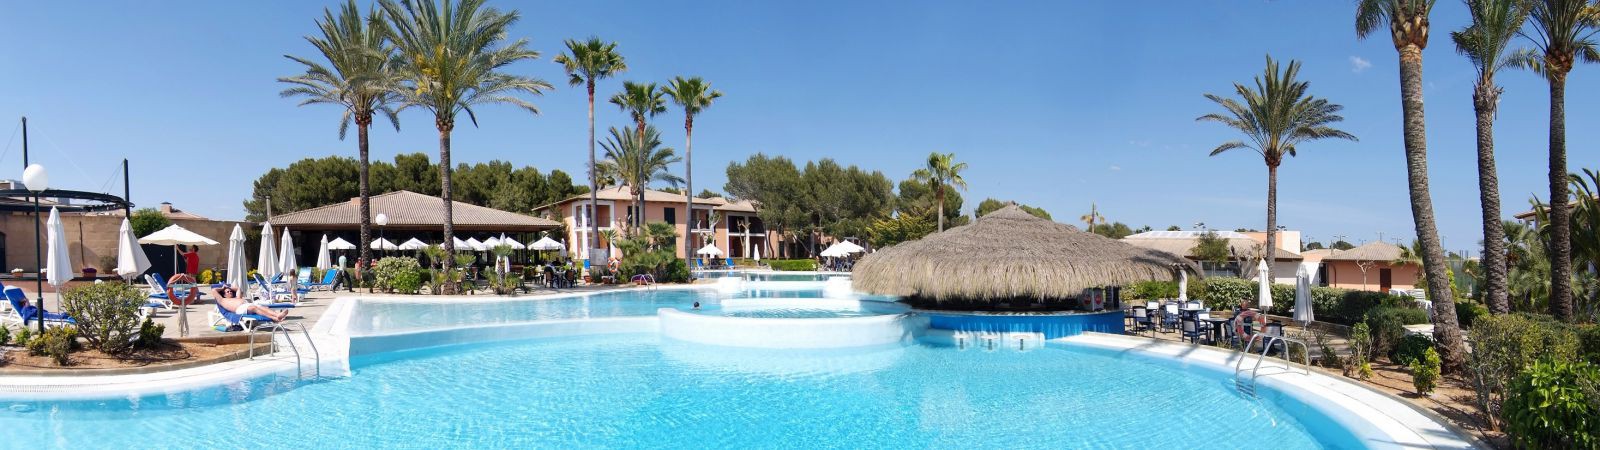 Mallorca hotel pool bar